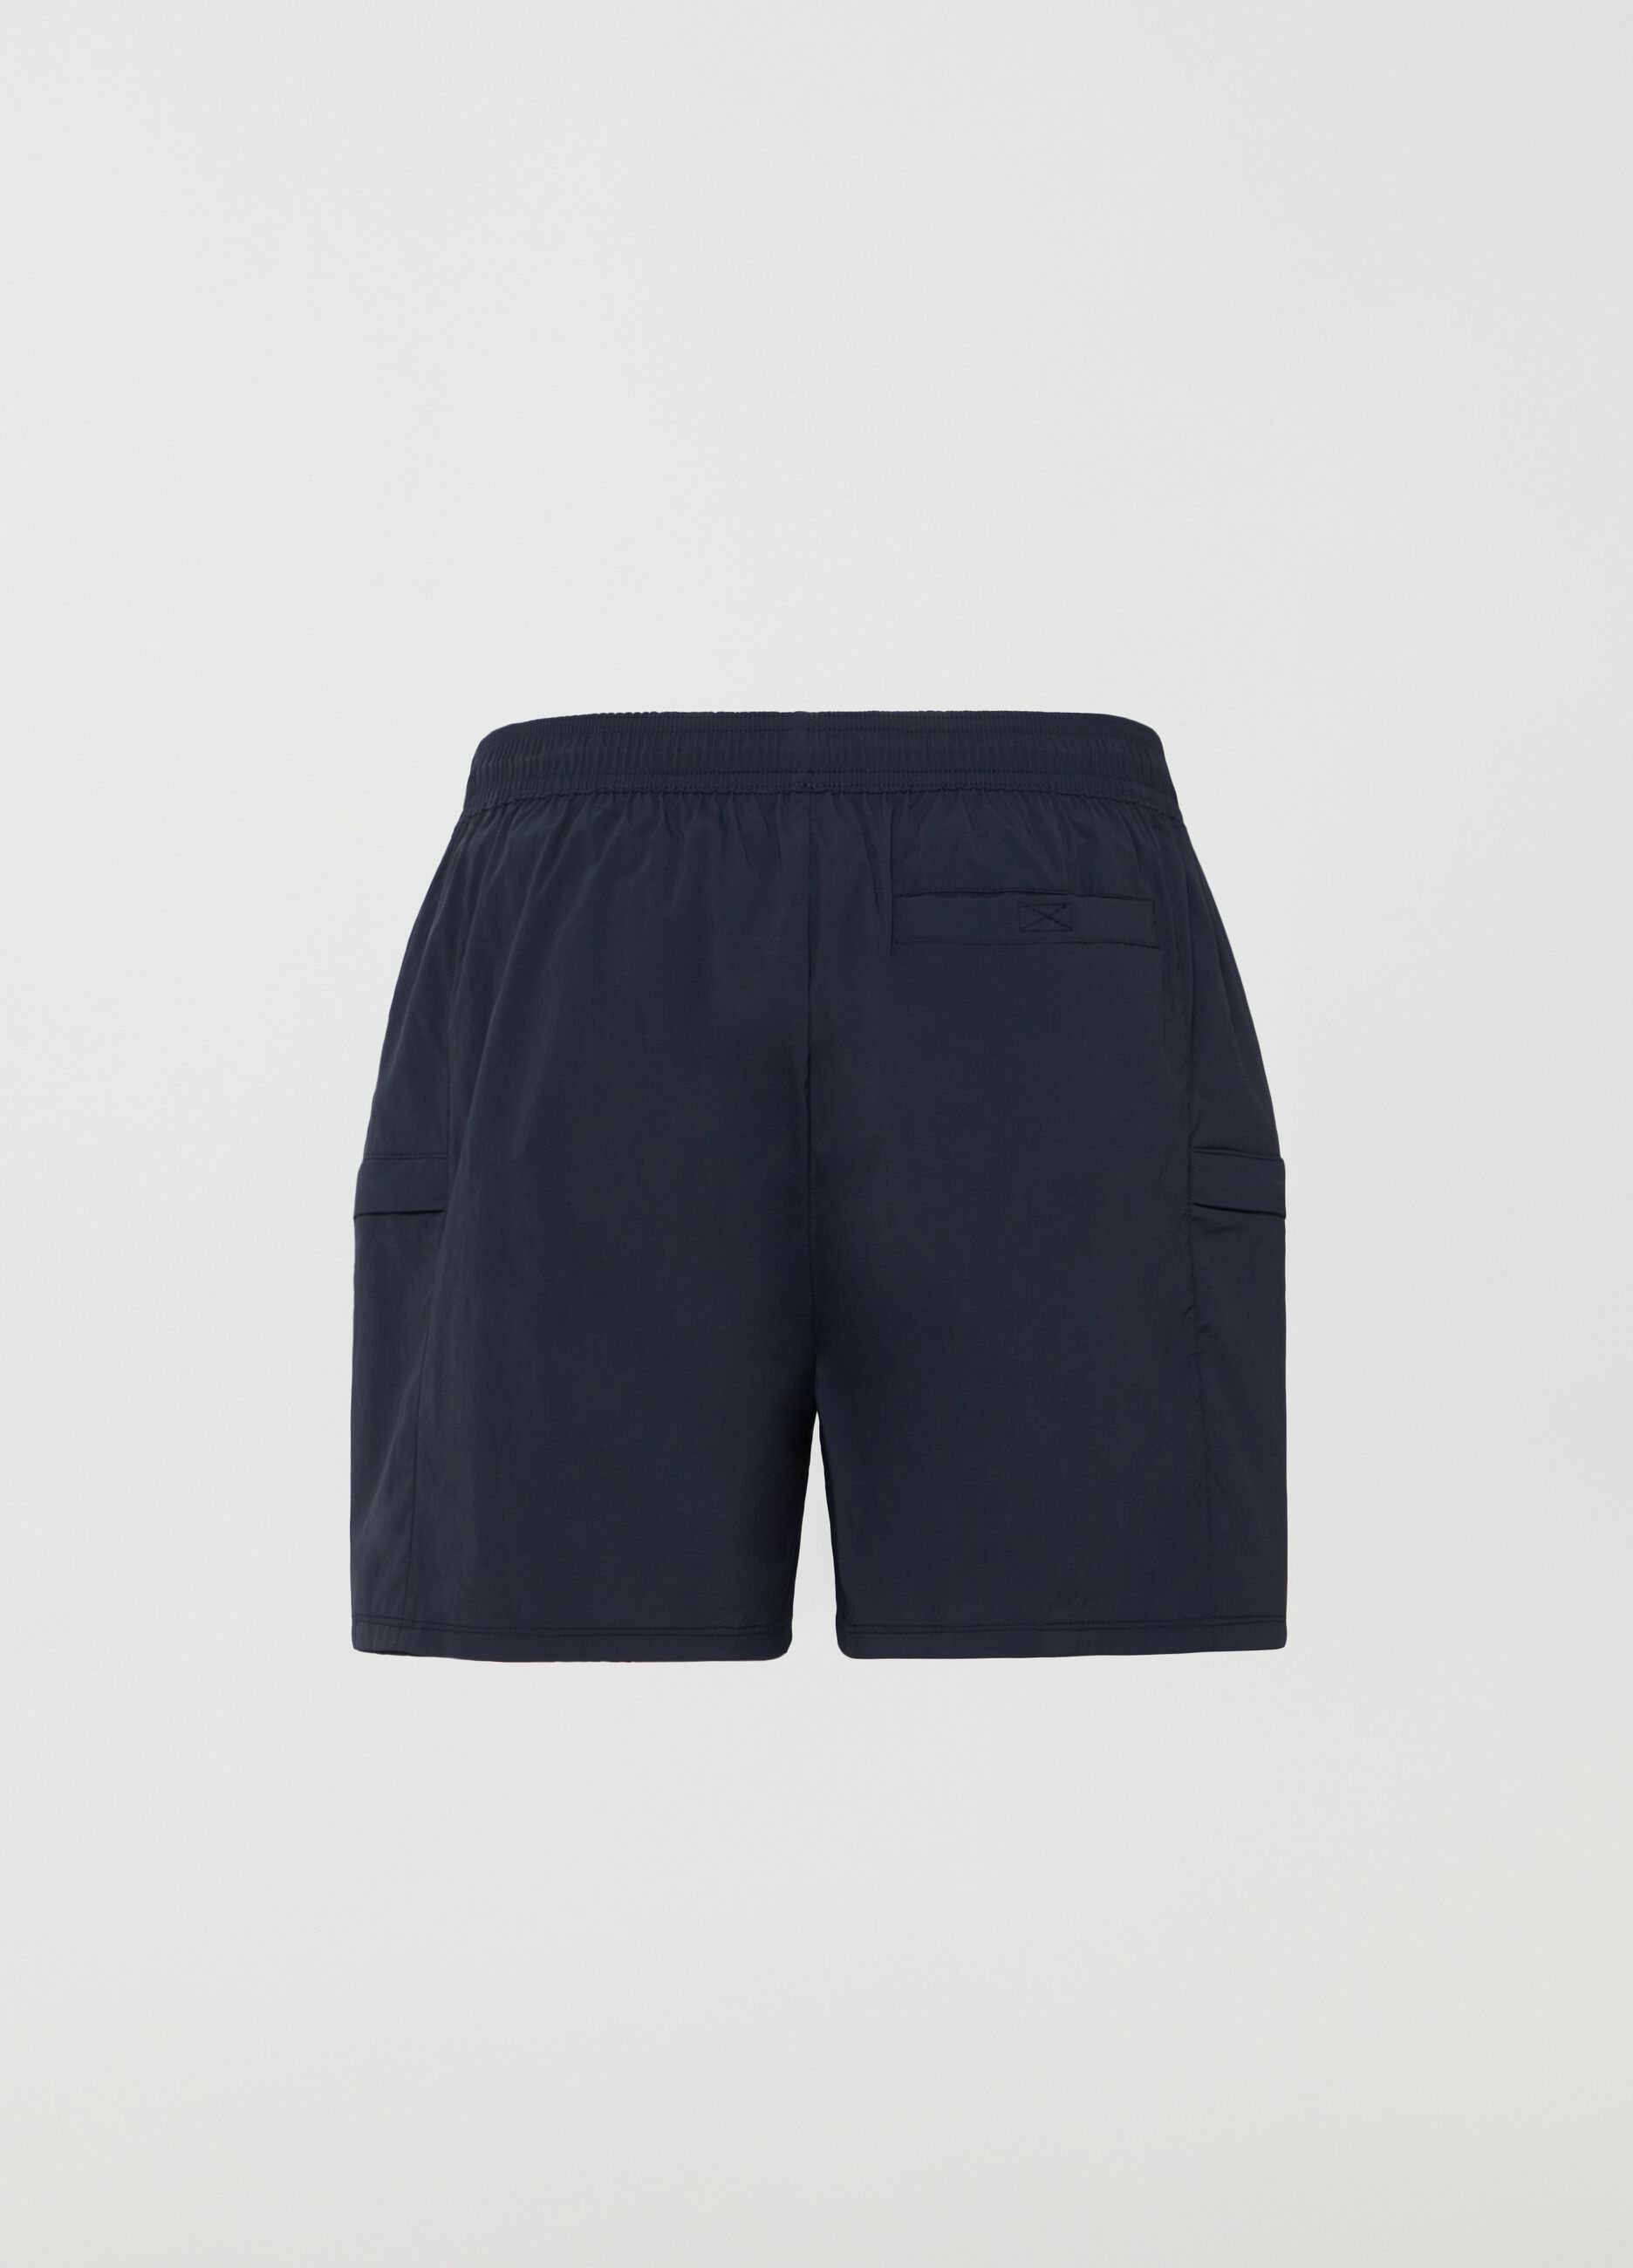 Beach shorts